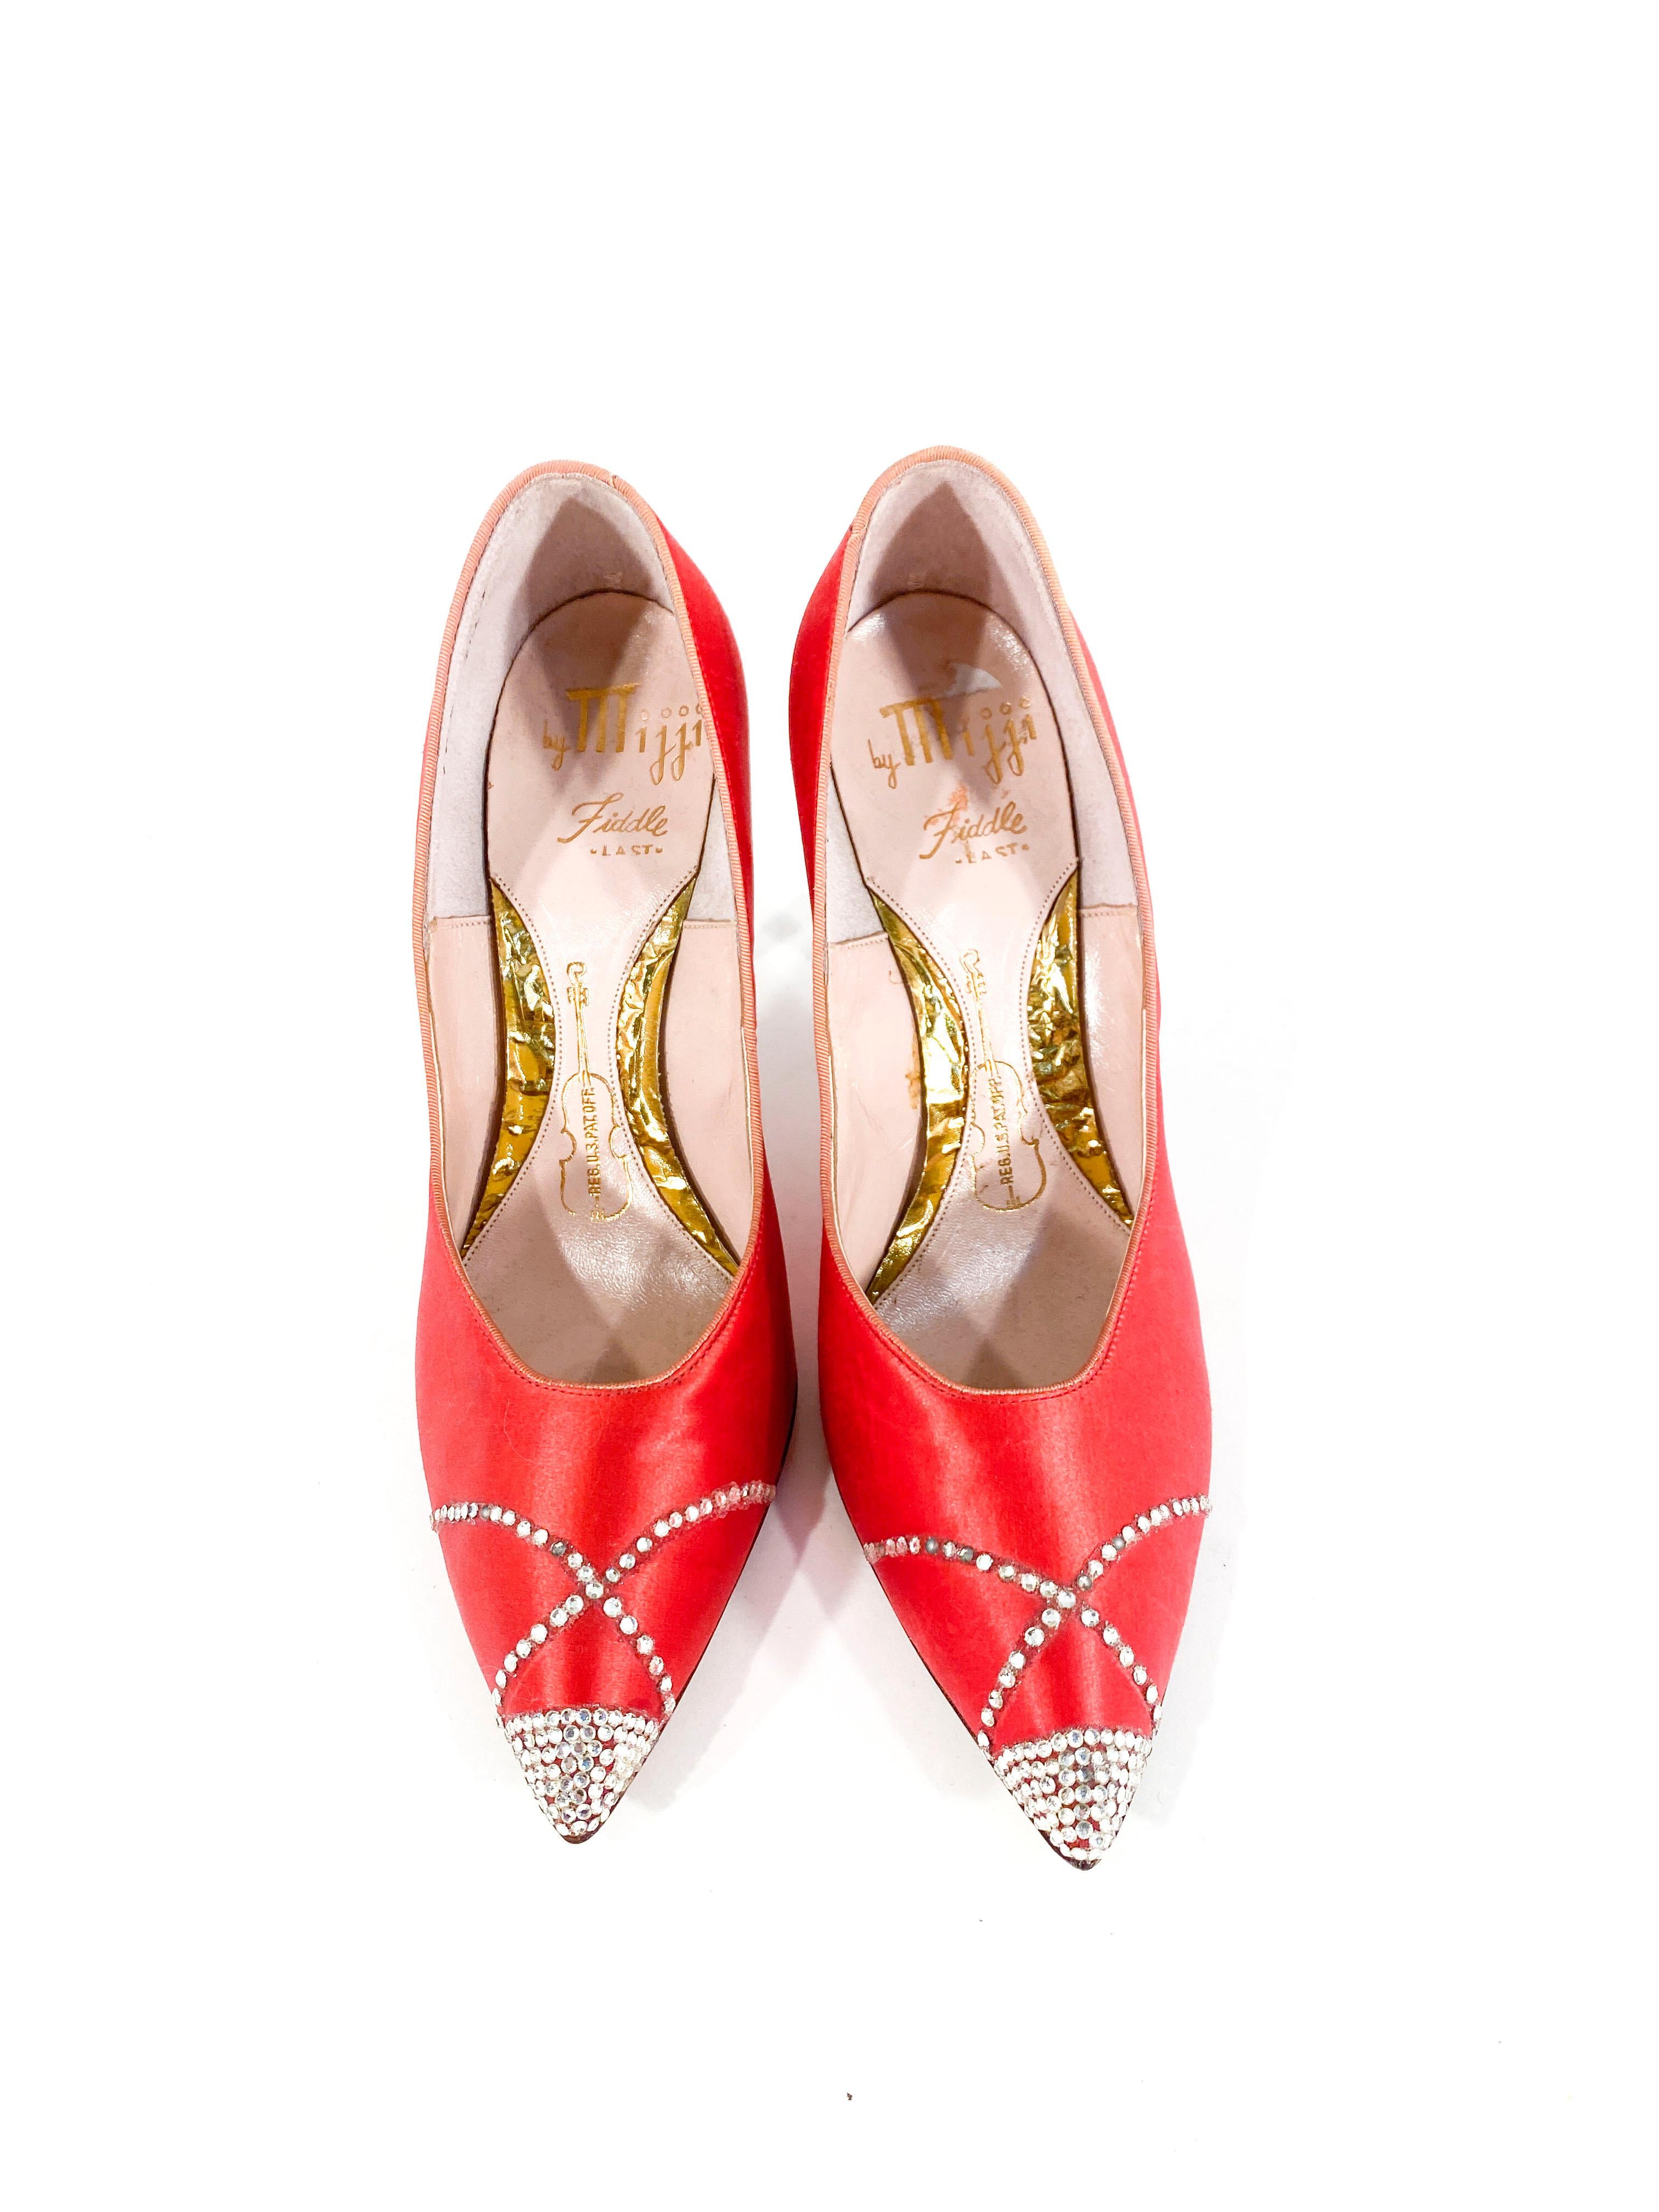 satin red heels